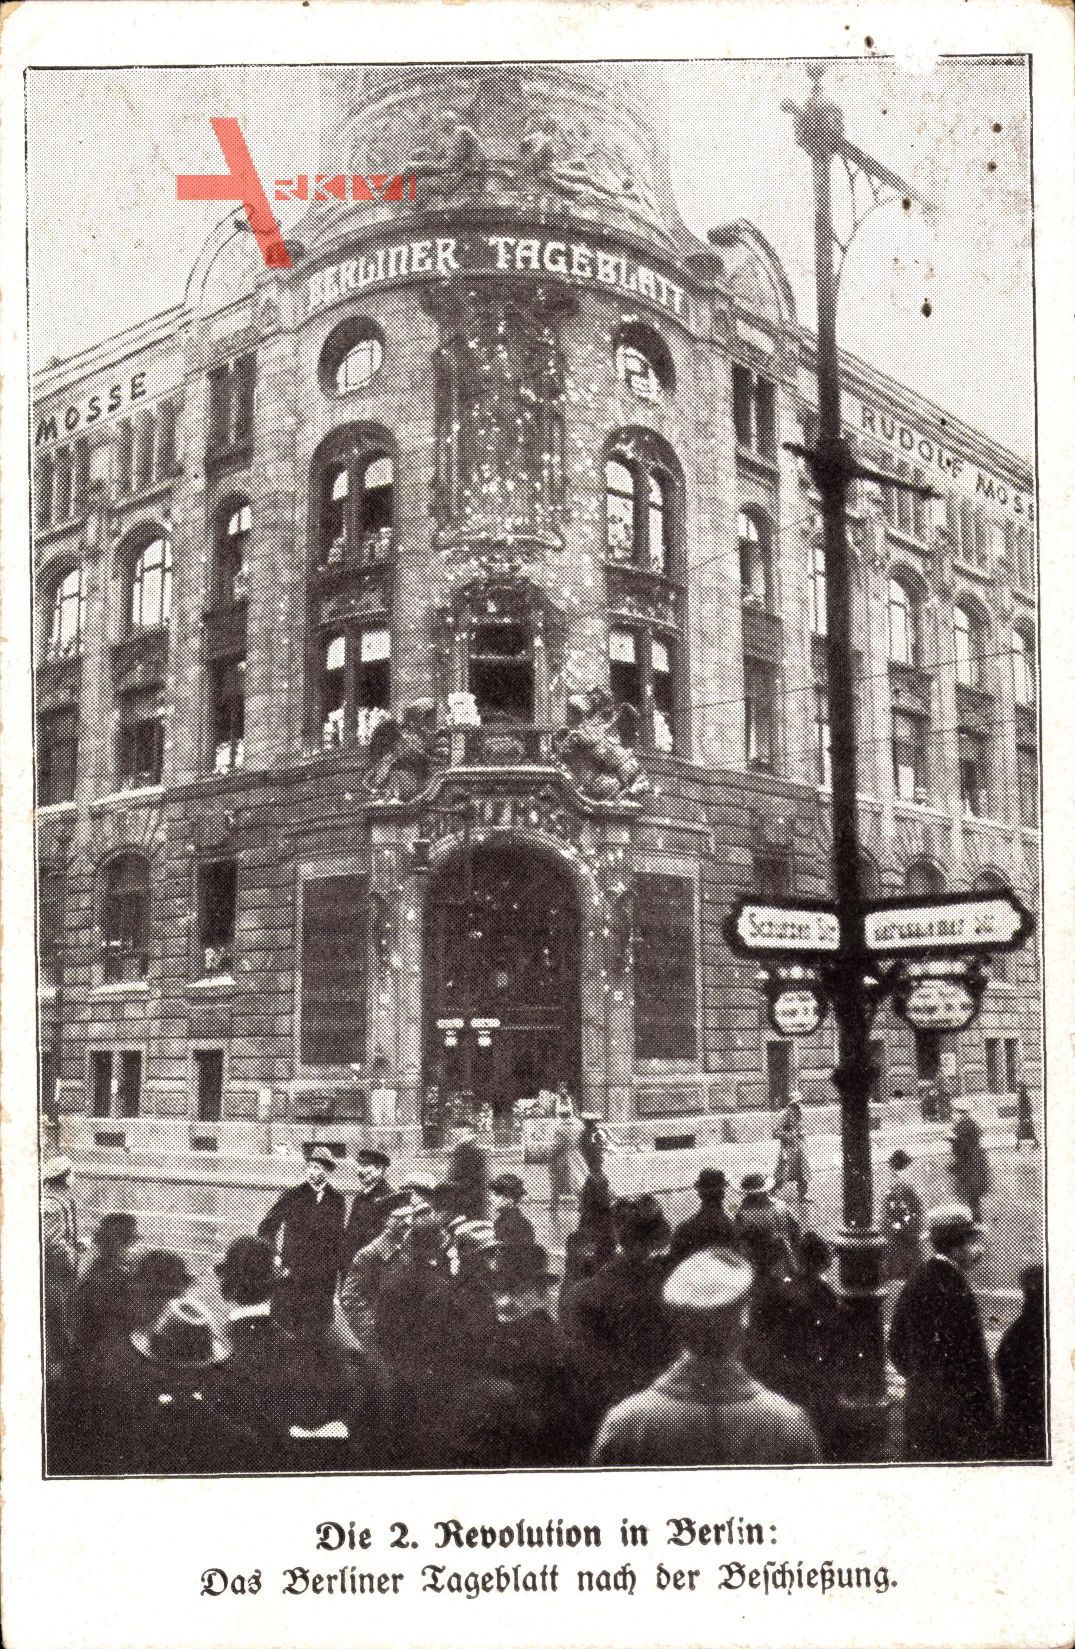 Berlin, Berliner Tageblatt nach der Beschießung, Spartakusaufstand 1919